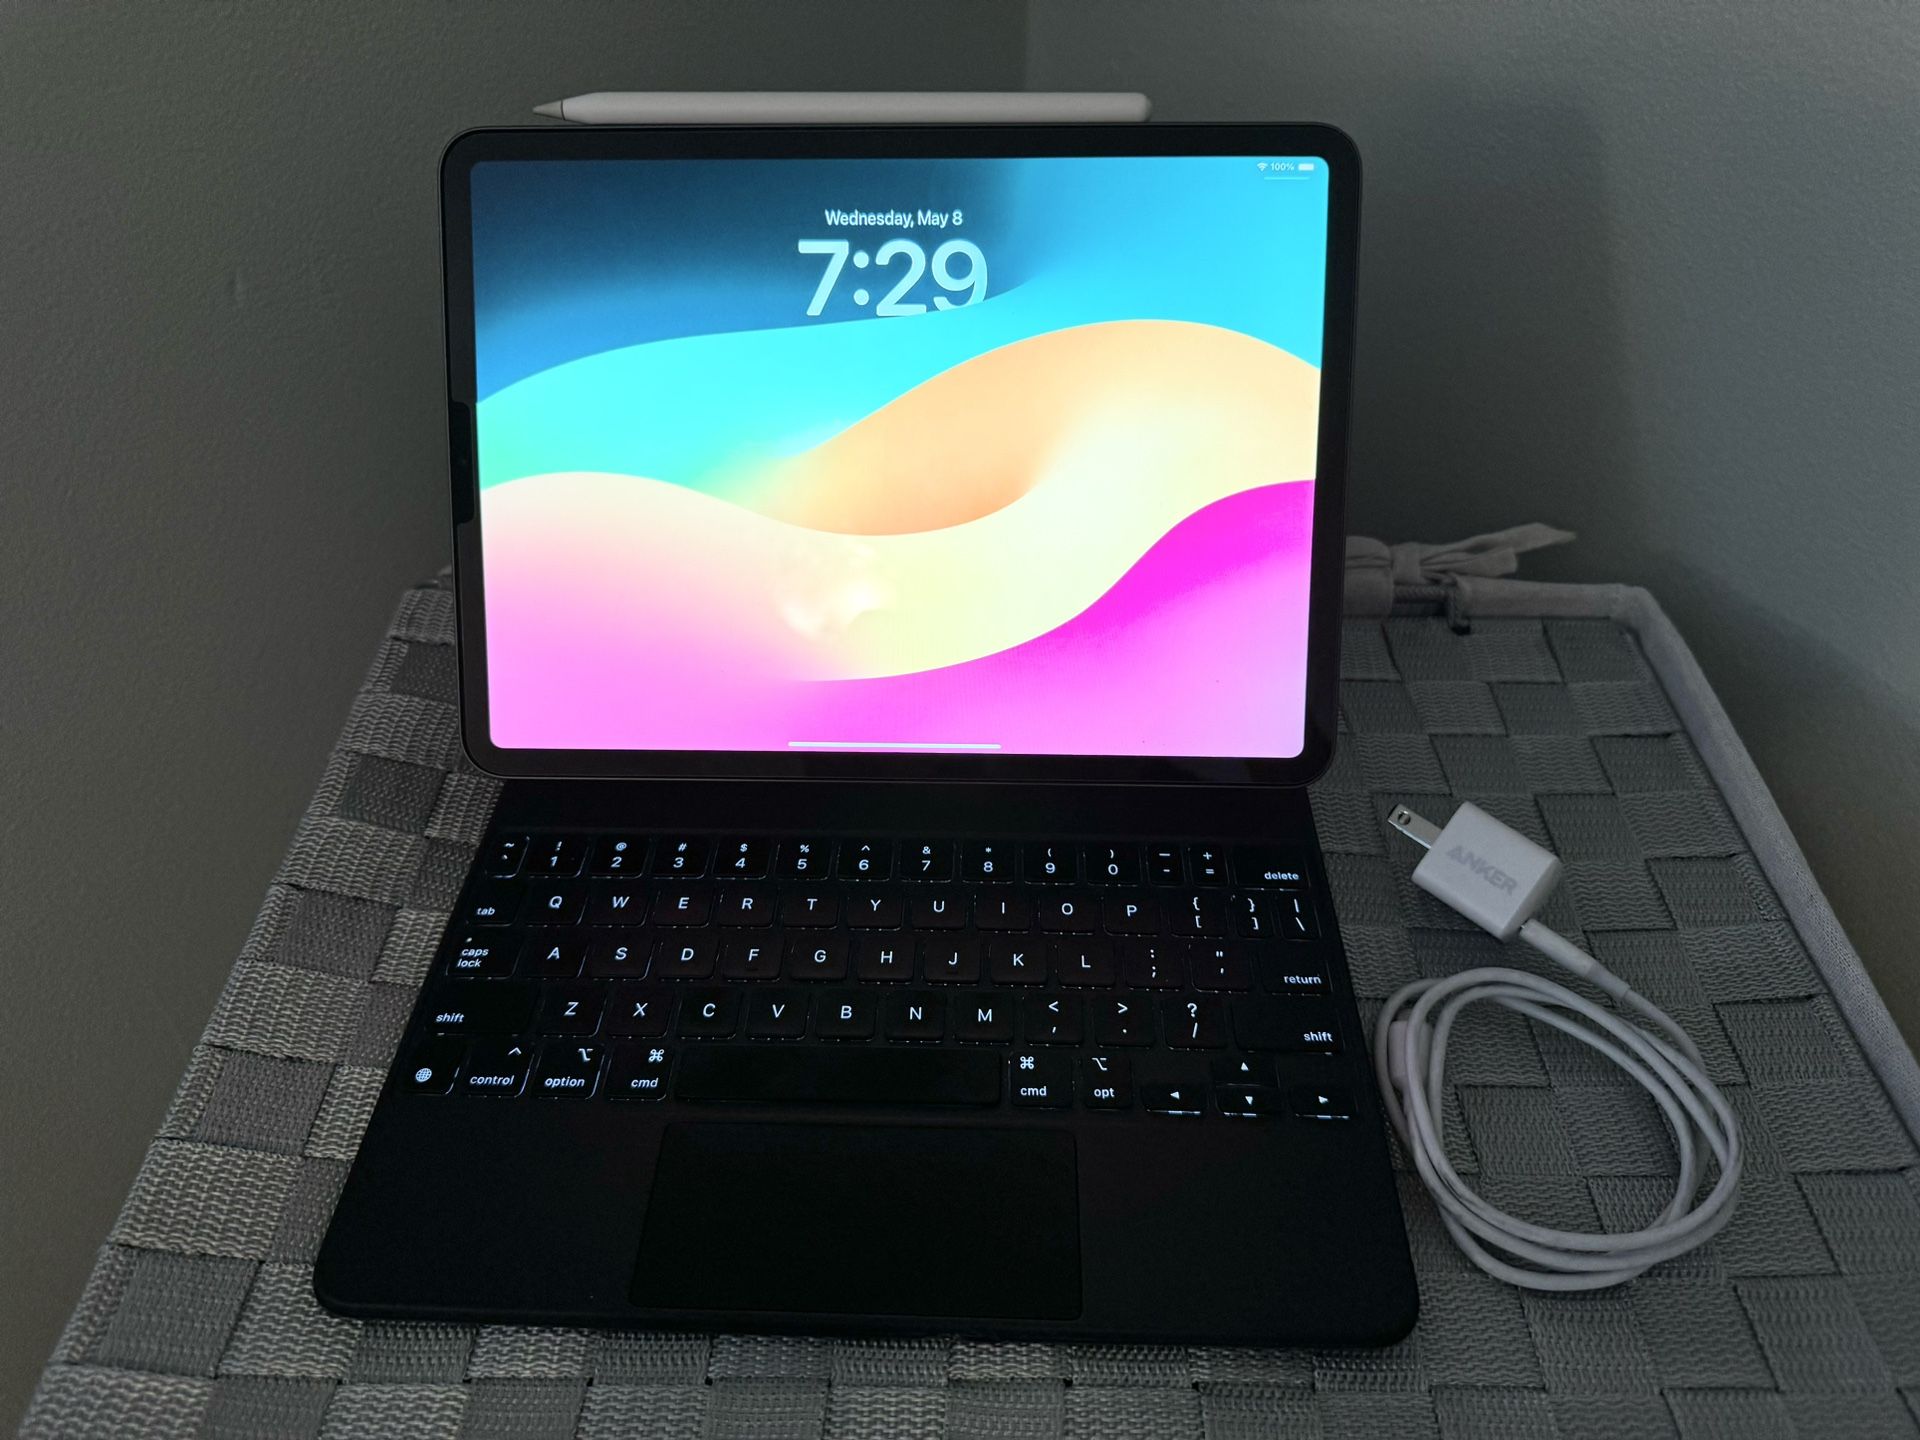 Apple iPad Pro 2rd Gen 128GB WiFi 11 inch Space Gray - Magic Keyboard & Pencil